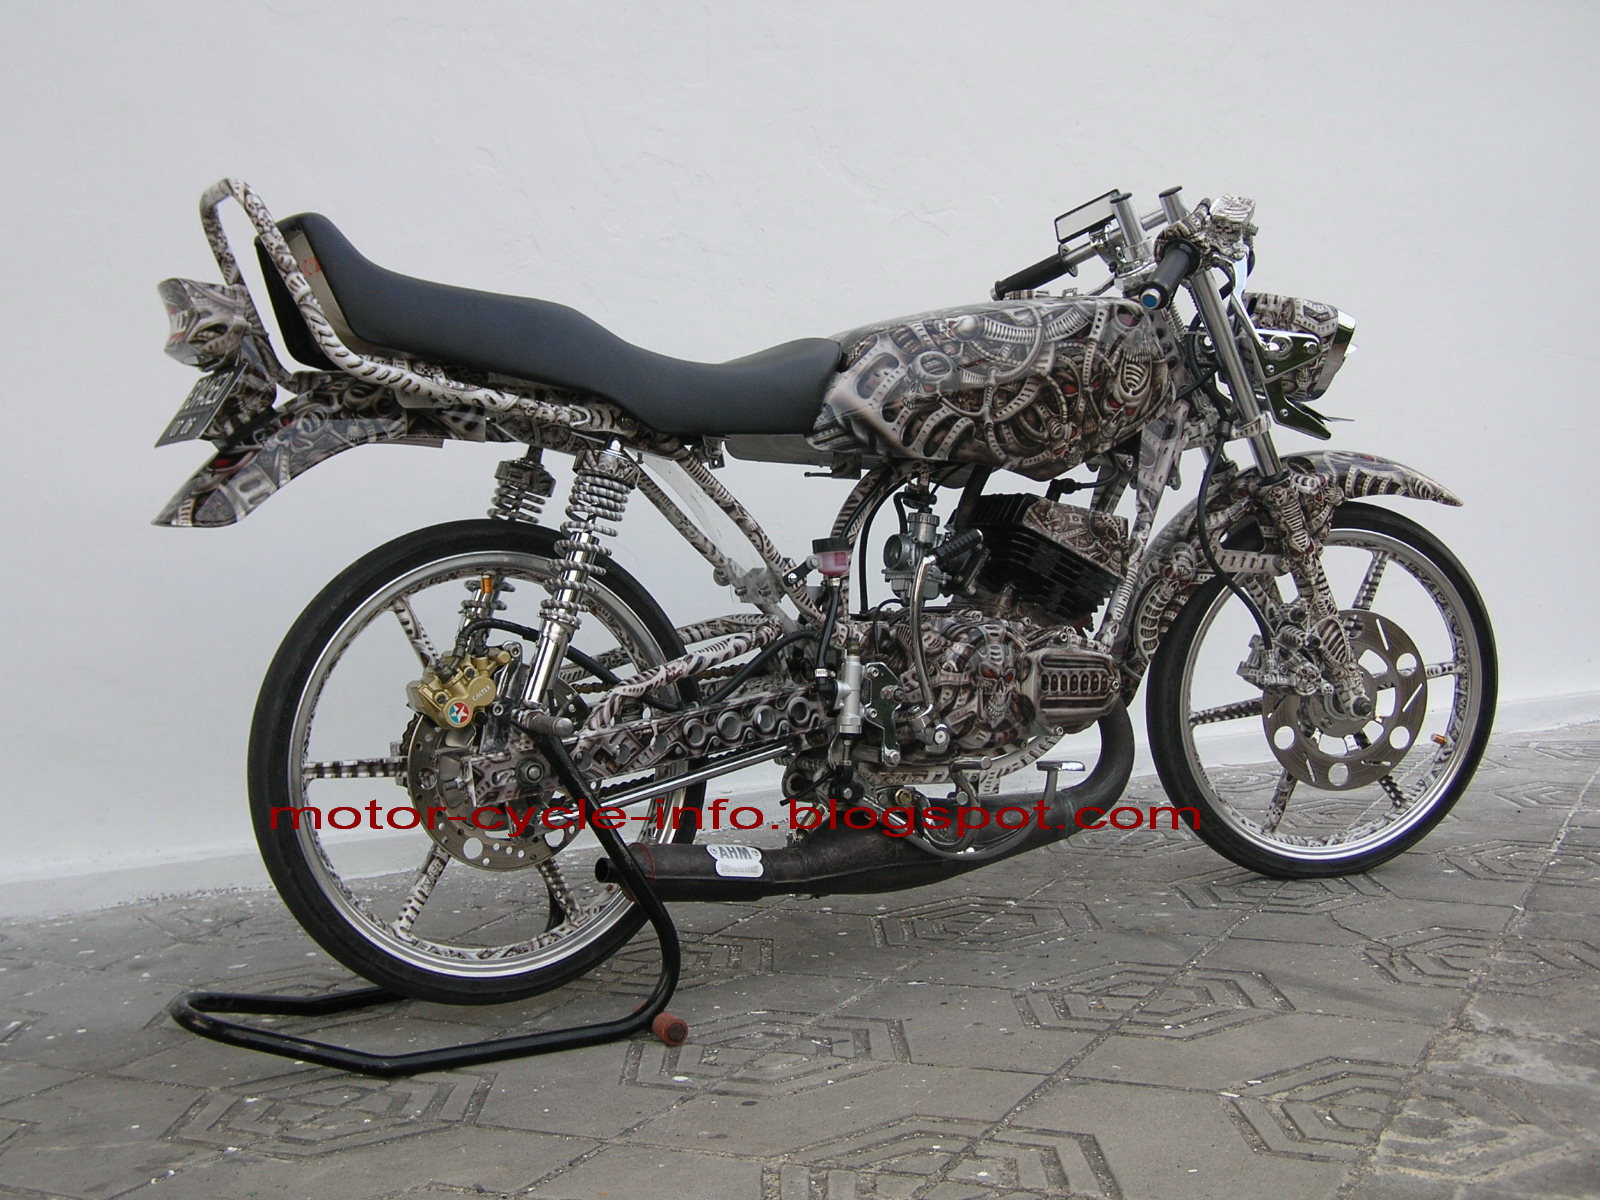 Modif Motor Yamaha Rxz Gambar Modifikasi Terbaru